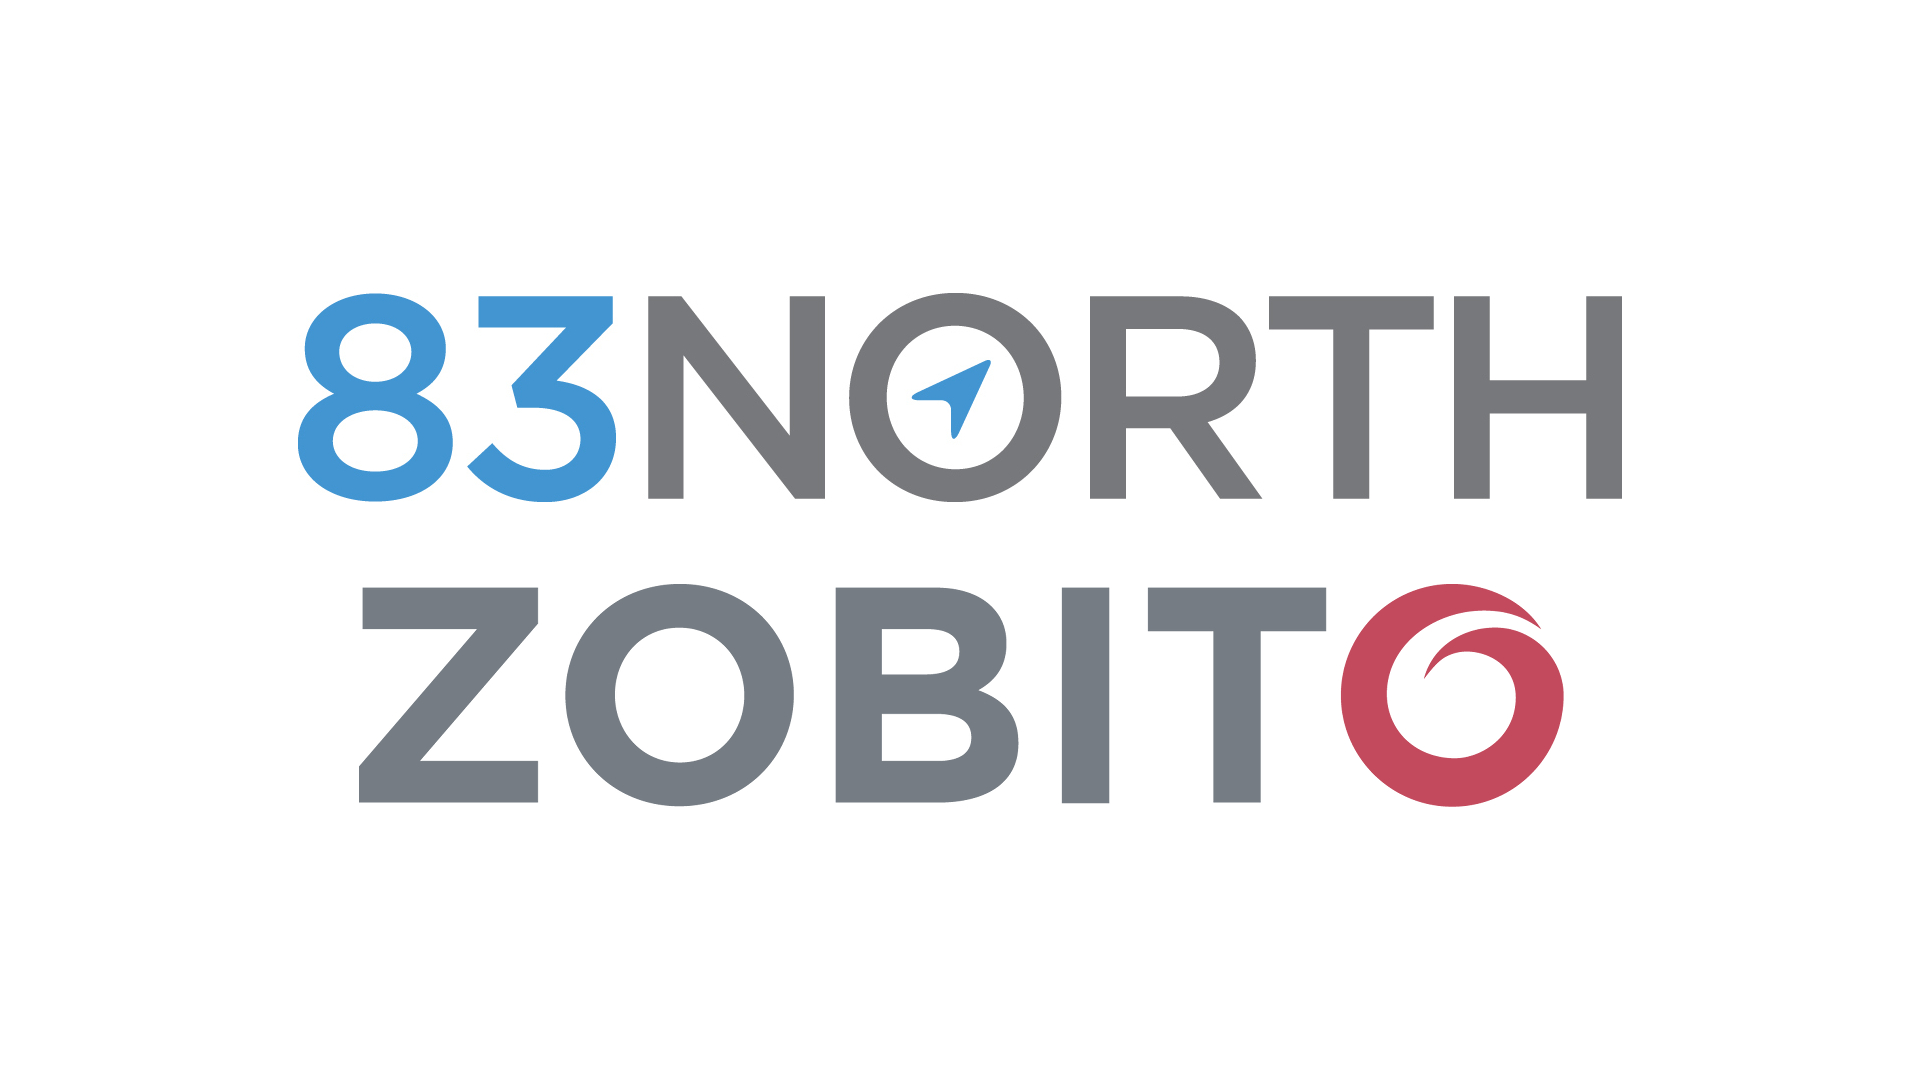 MotorK riceve un finanziamento da 83North e Zobito